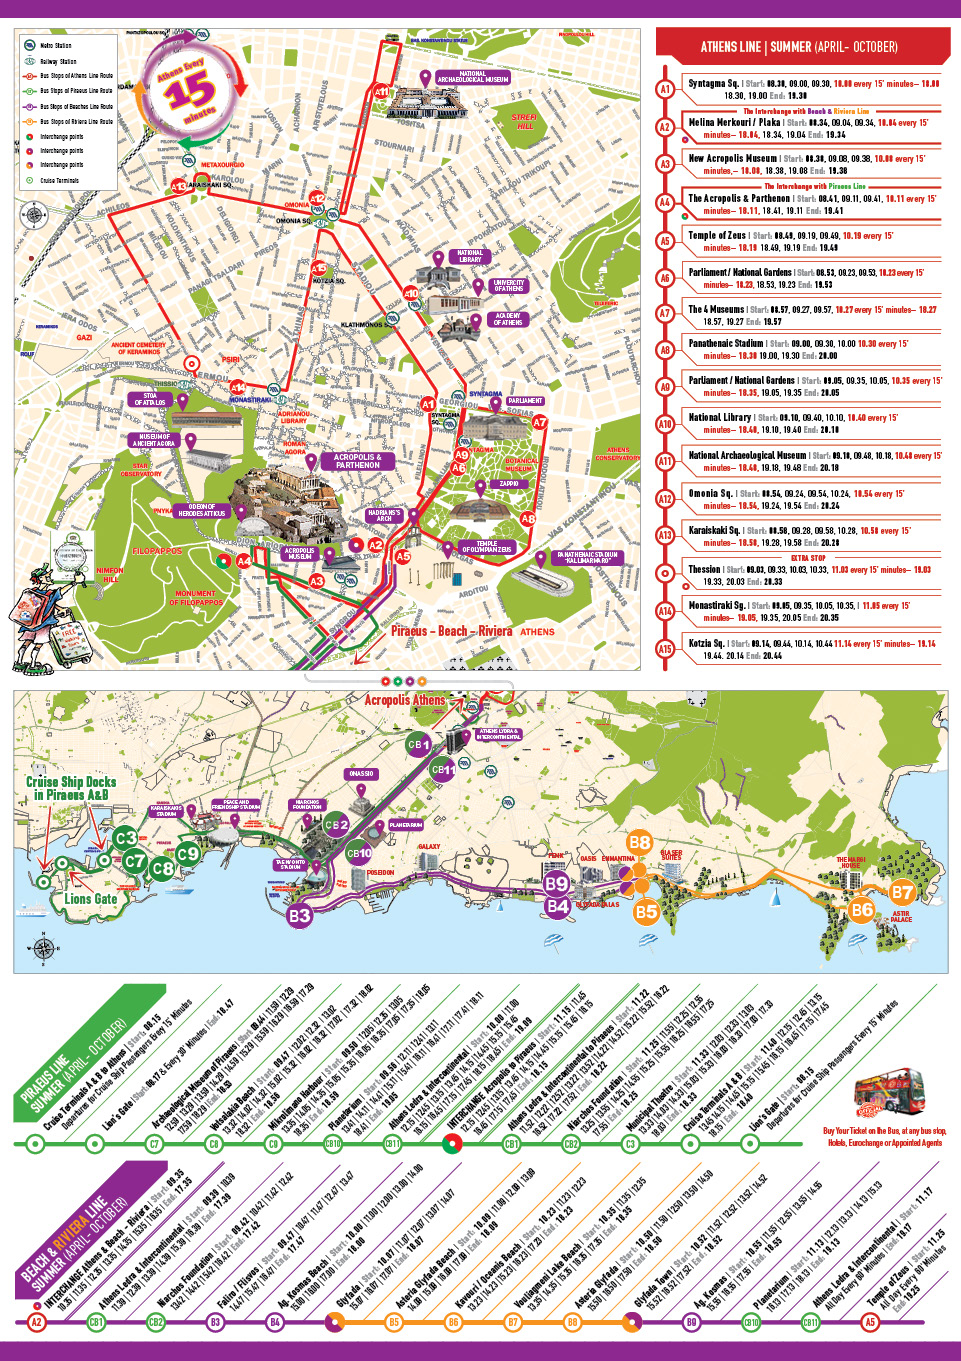 athens bus tour map